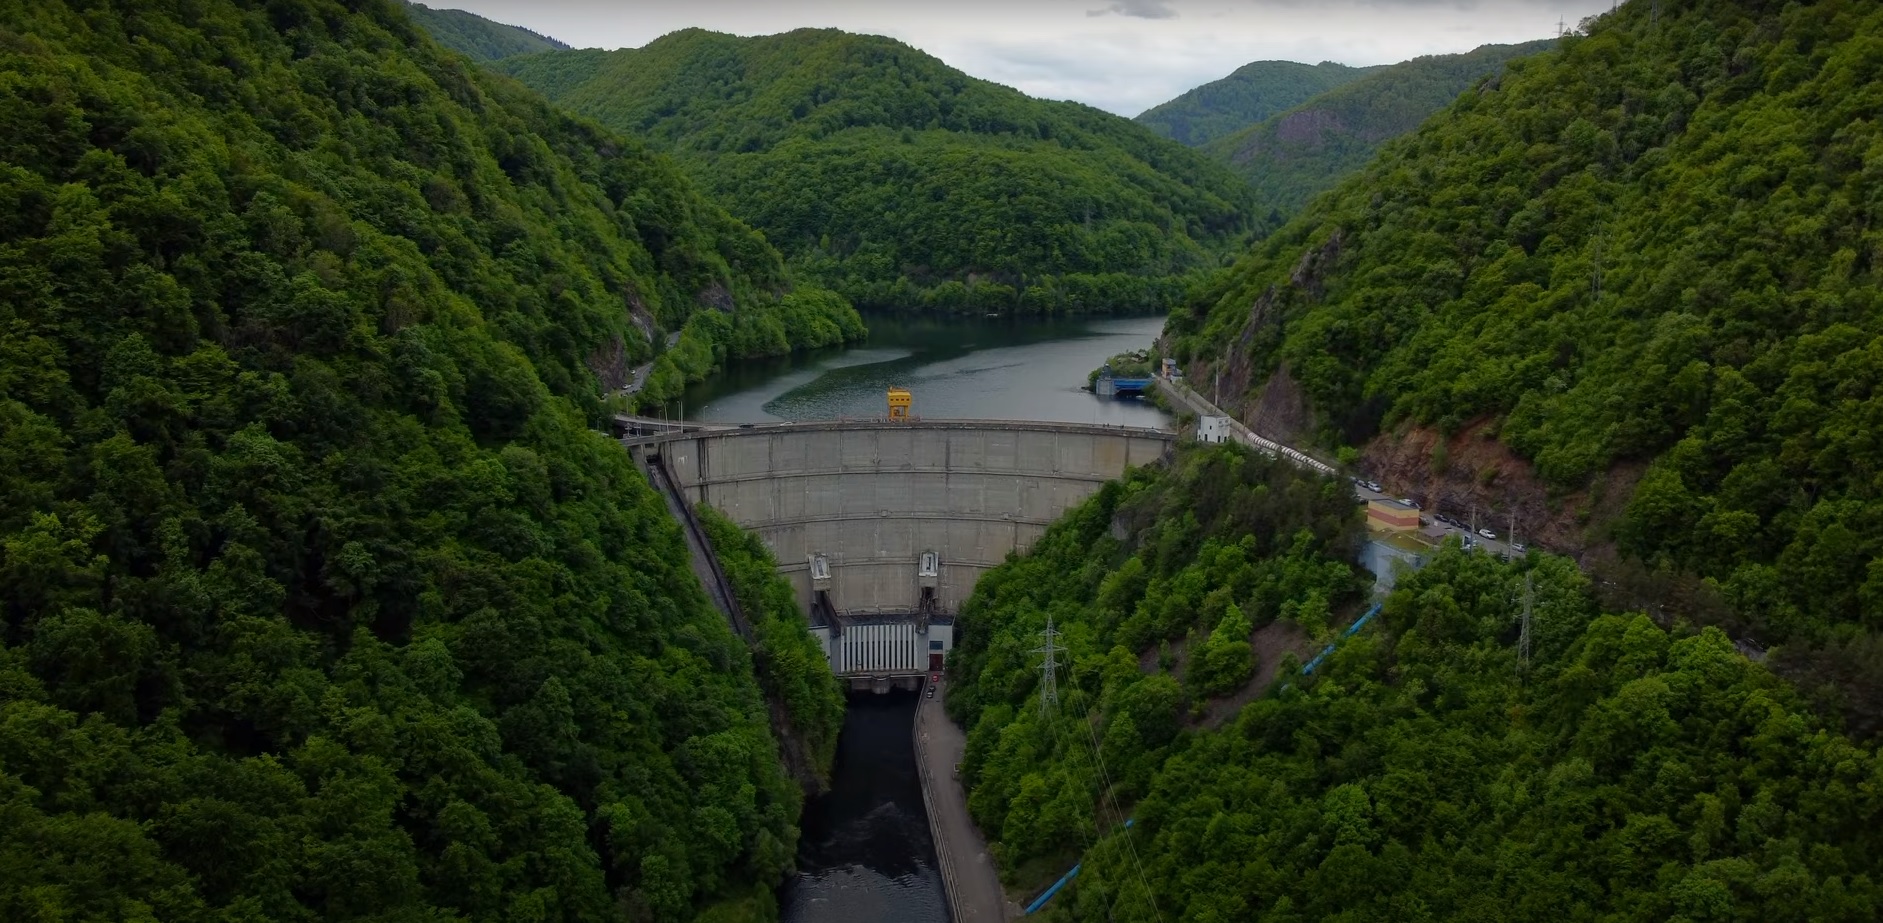 Proiectul hidrocentralei de la Tarnița aduce peste un milion. FOTO: Captură ecran/ Youtube: Hai să socializăm 12 companii, interesate de proiectul hidrocentralei de la Tarnița aduce peste un miliard de euro la Cluj. FOTO: Captură ecran/ Youtube: Hai să socializăm